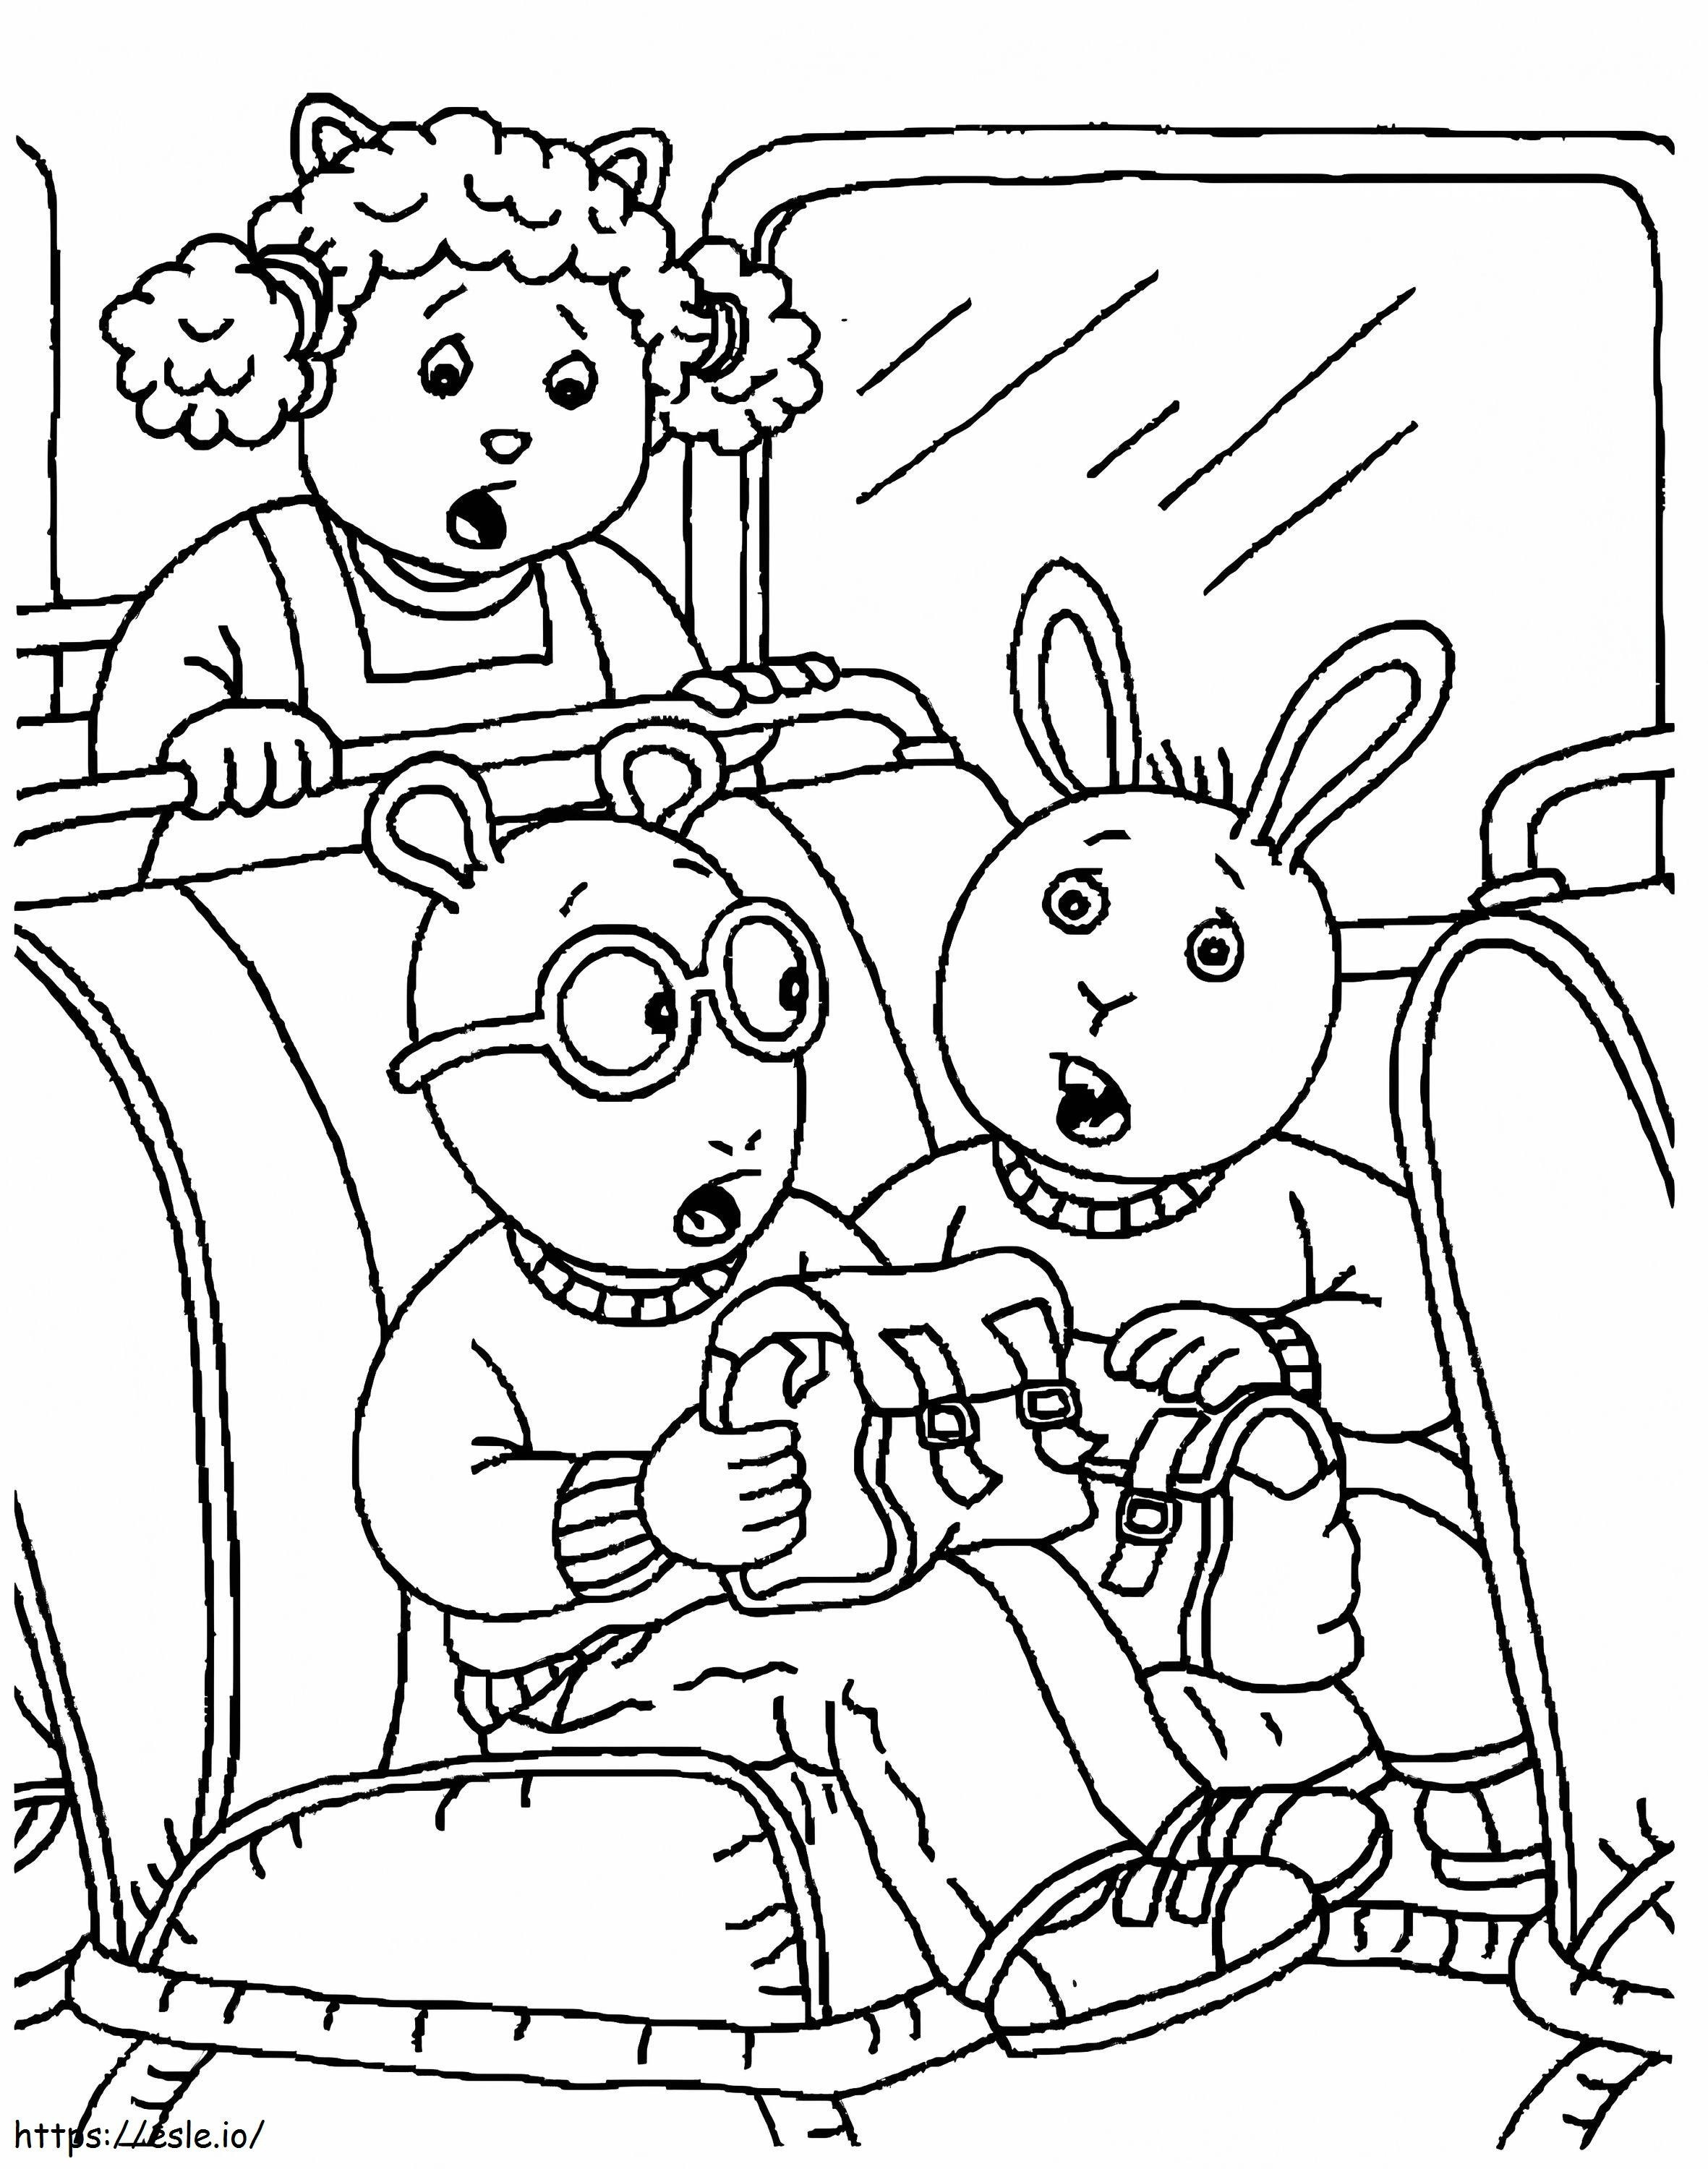 Artur czyta w autobusie kolorowanka